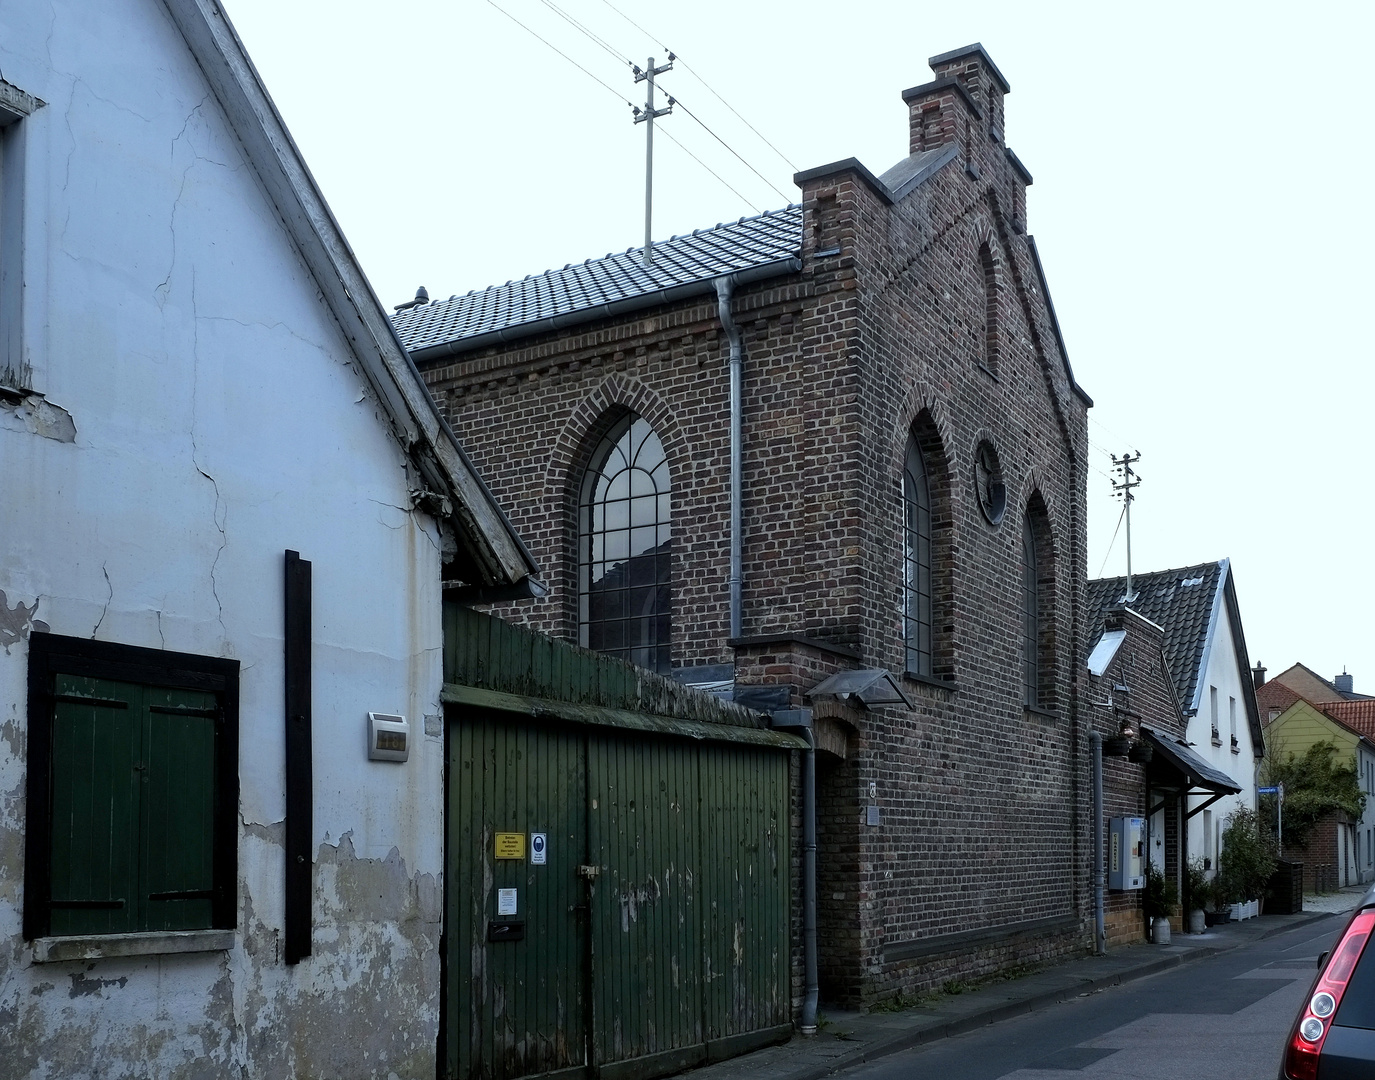 die ehemalige Synagoge -2-